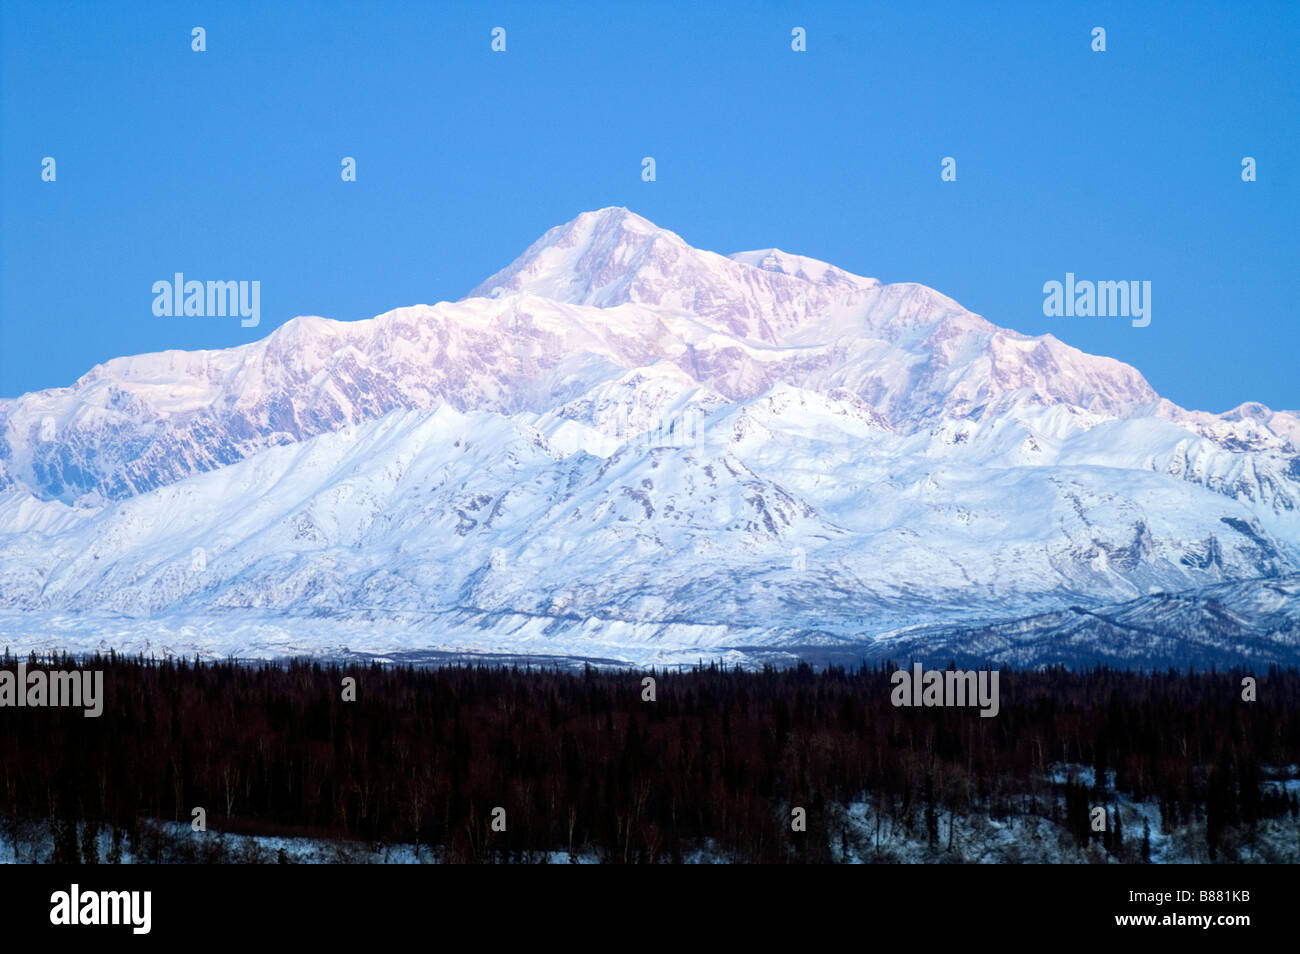 Mt McKinley Montagnes Alaska Denali National Park États-Unis Amérique du Nord Banque D'Images